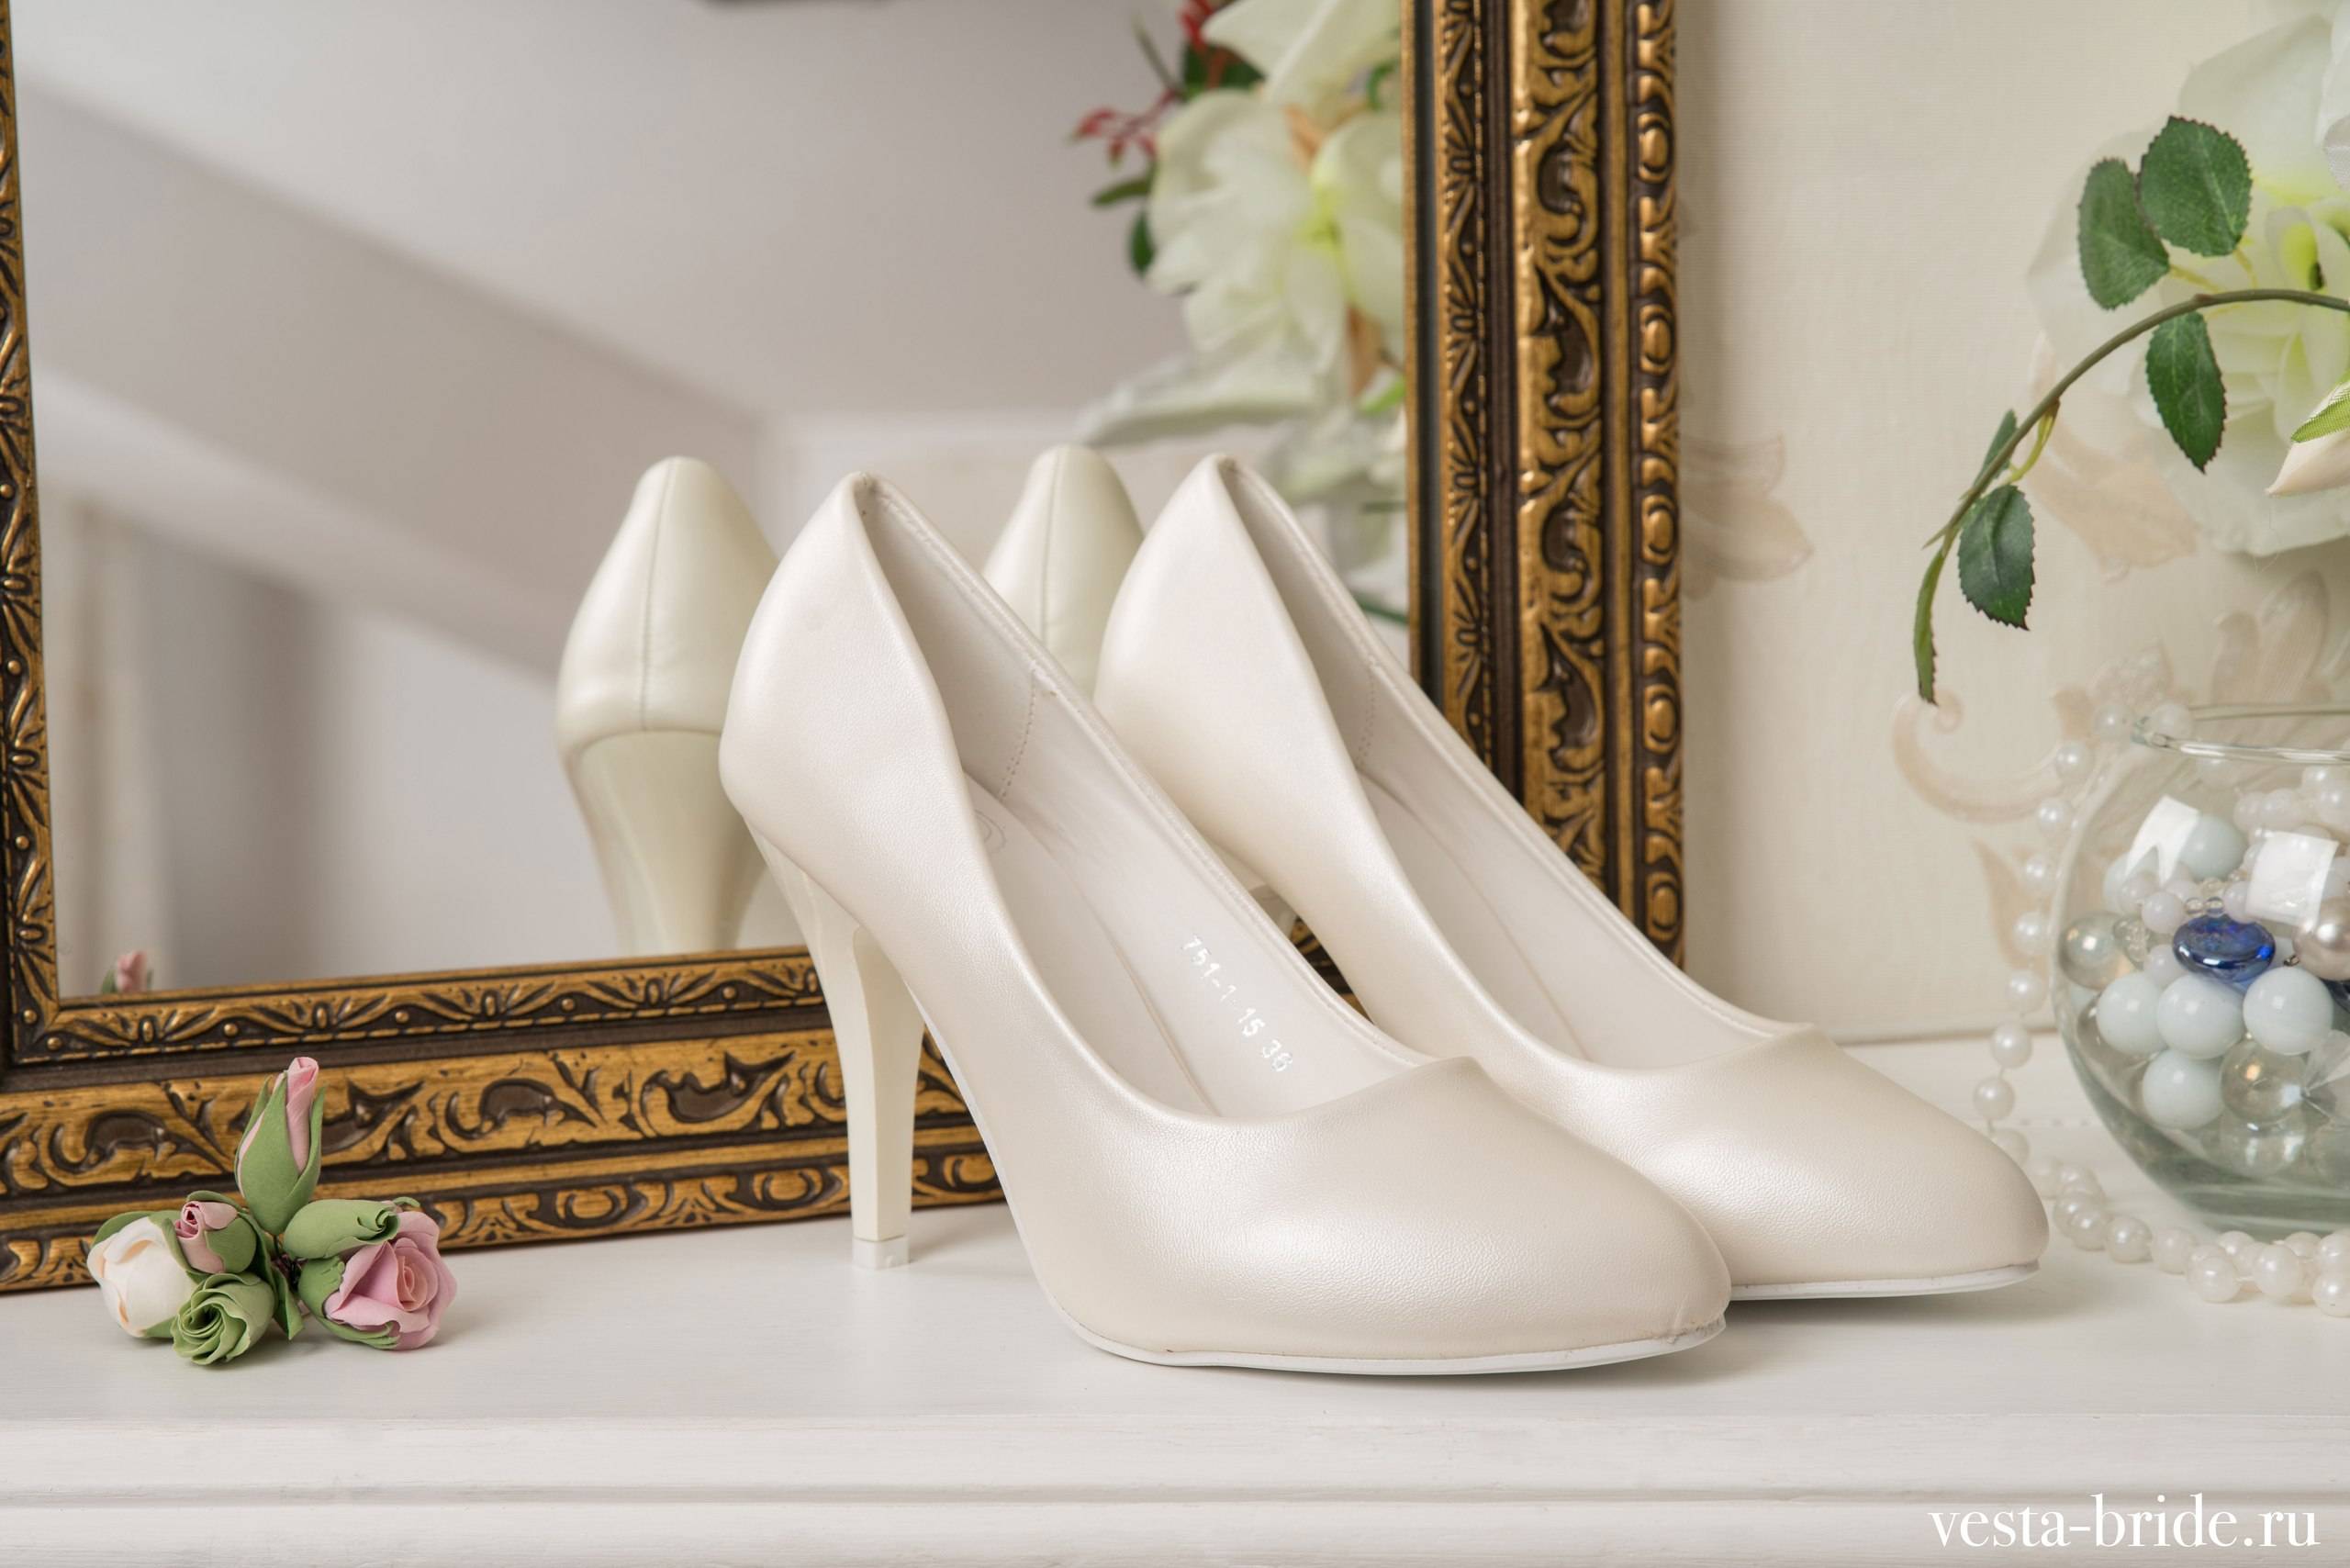 Какие должны быть туфли у невесты приметы. приметы для невесты. каблук у свадебных туфель и приметы